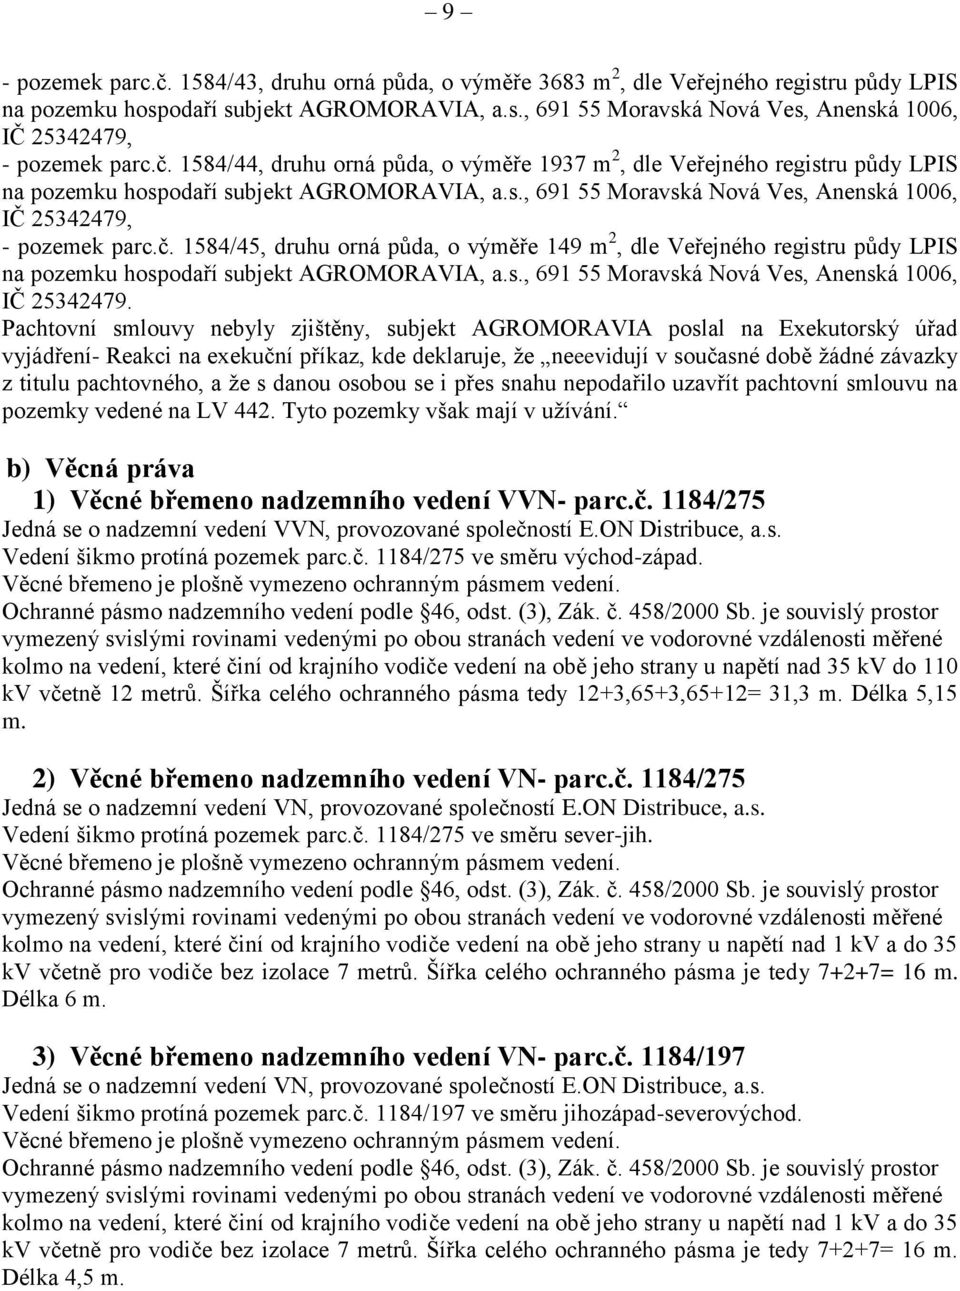 s., 691 55 Moravská Nová Ves, Anenská 1006, IČ 25342479.